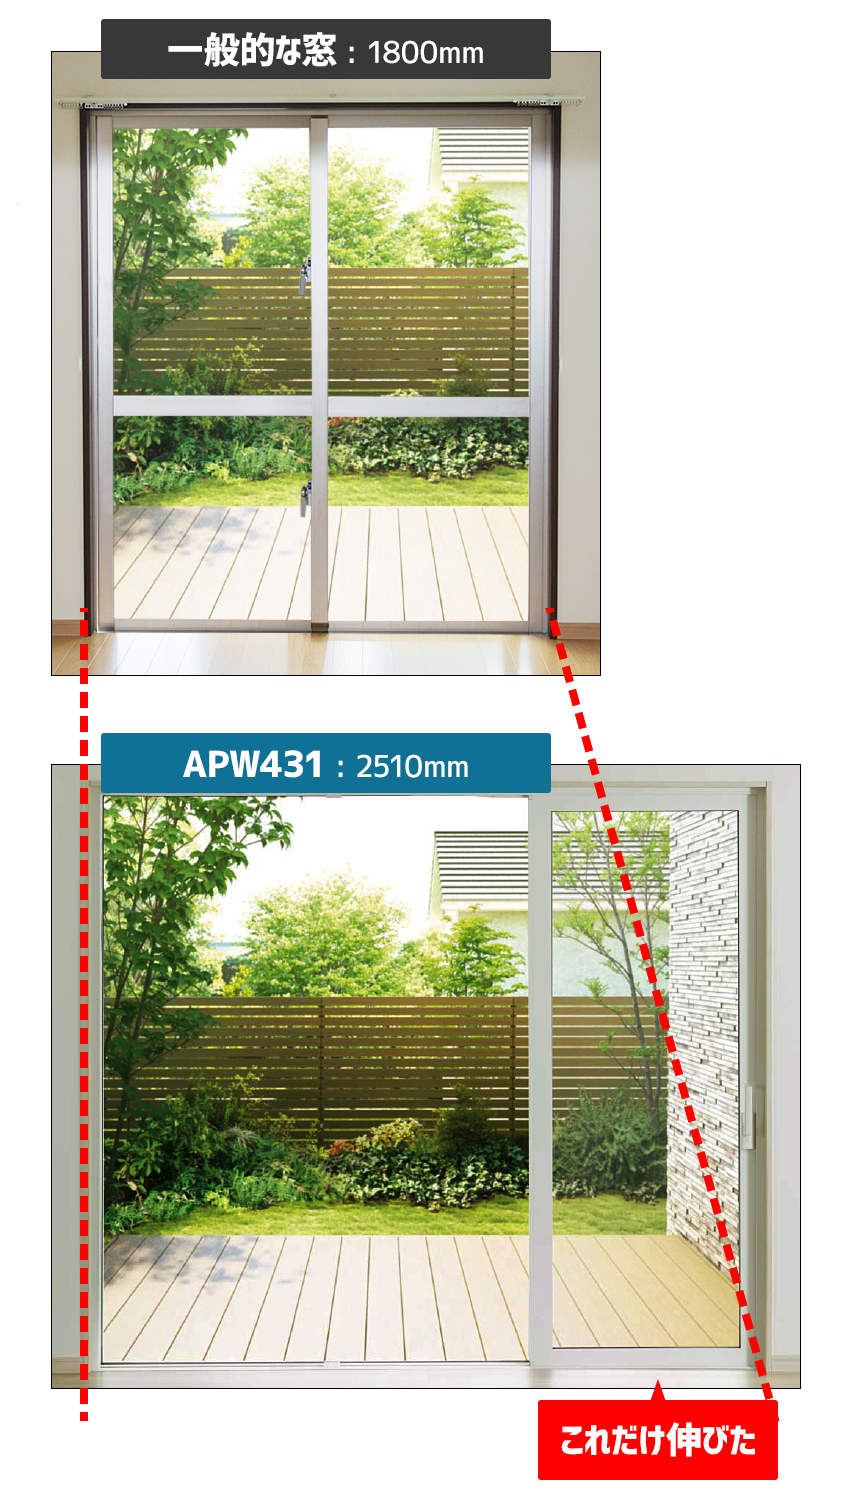 一般窓とAPW431の窓幅比較